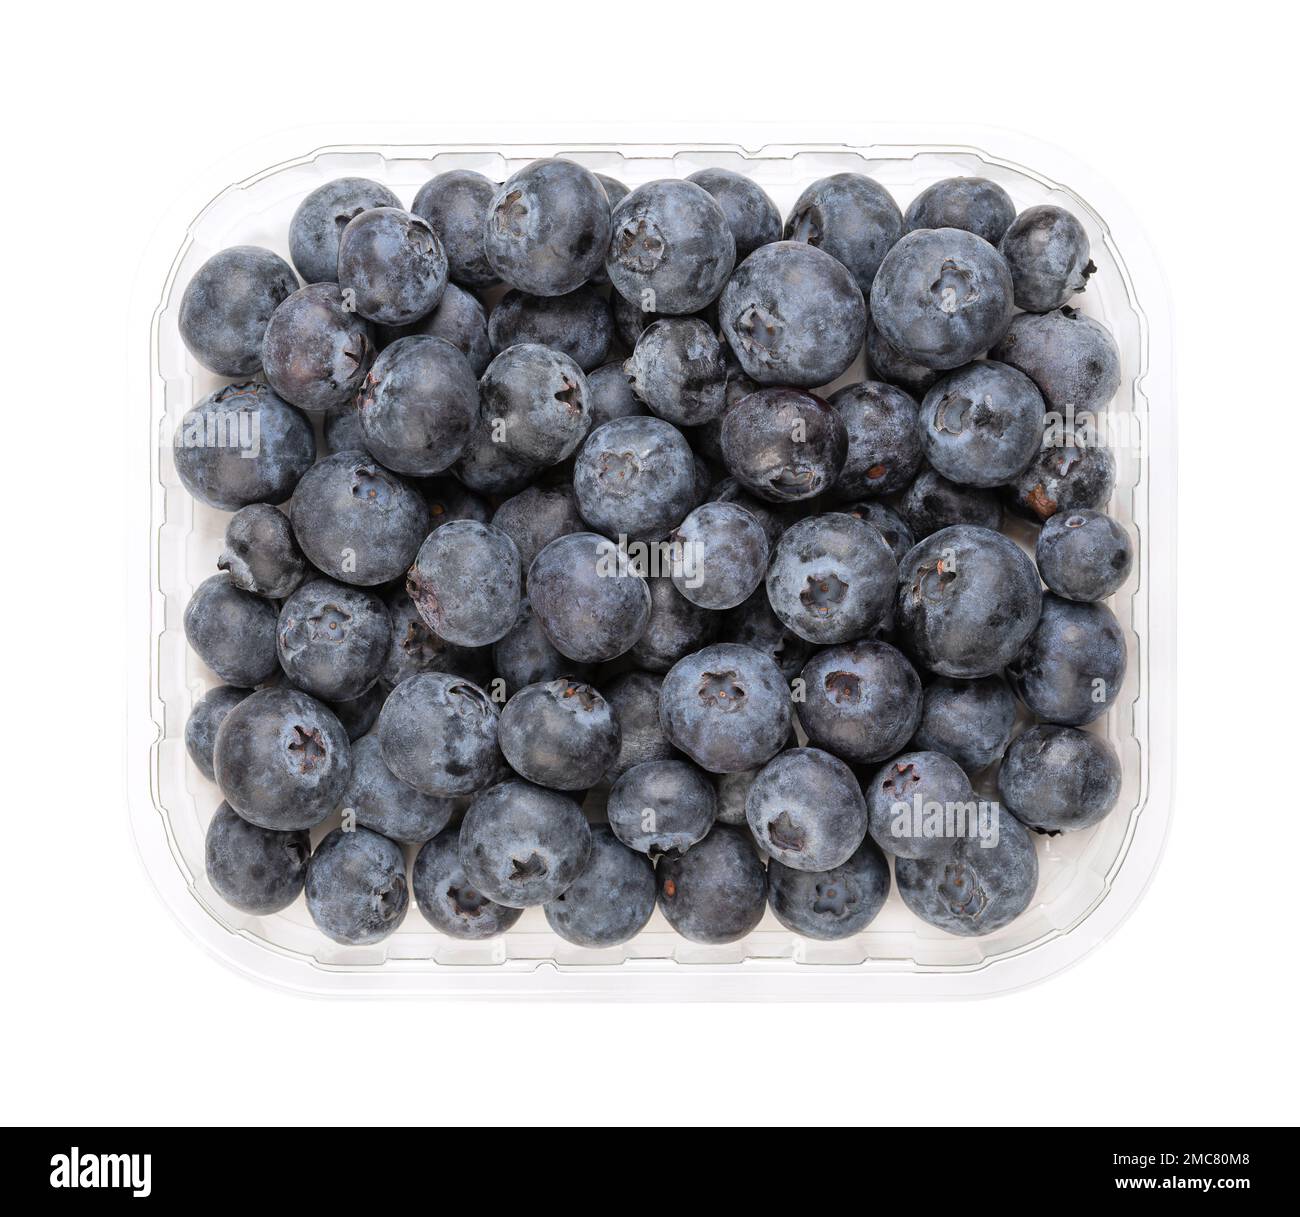 Bleuets frais entiers, dans un punnet en plastique transparent, du dessus. Fruits crus de Vaccinium corymbosum, mûrs, de couleur bleu foncé. Banque D'Images